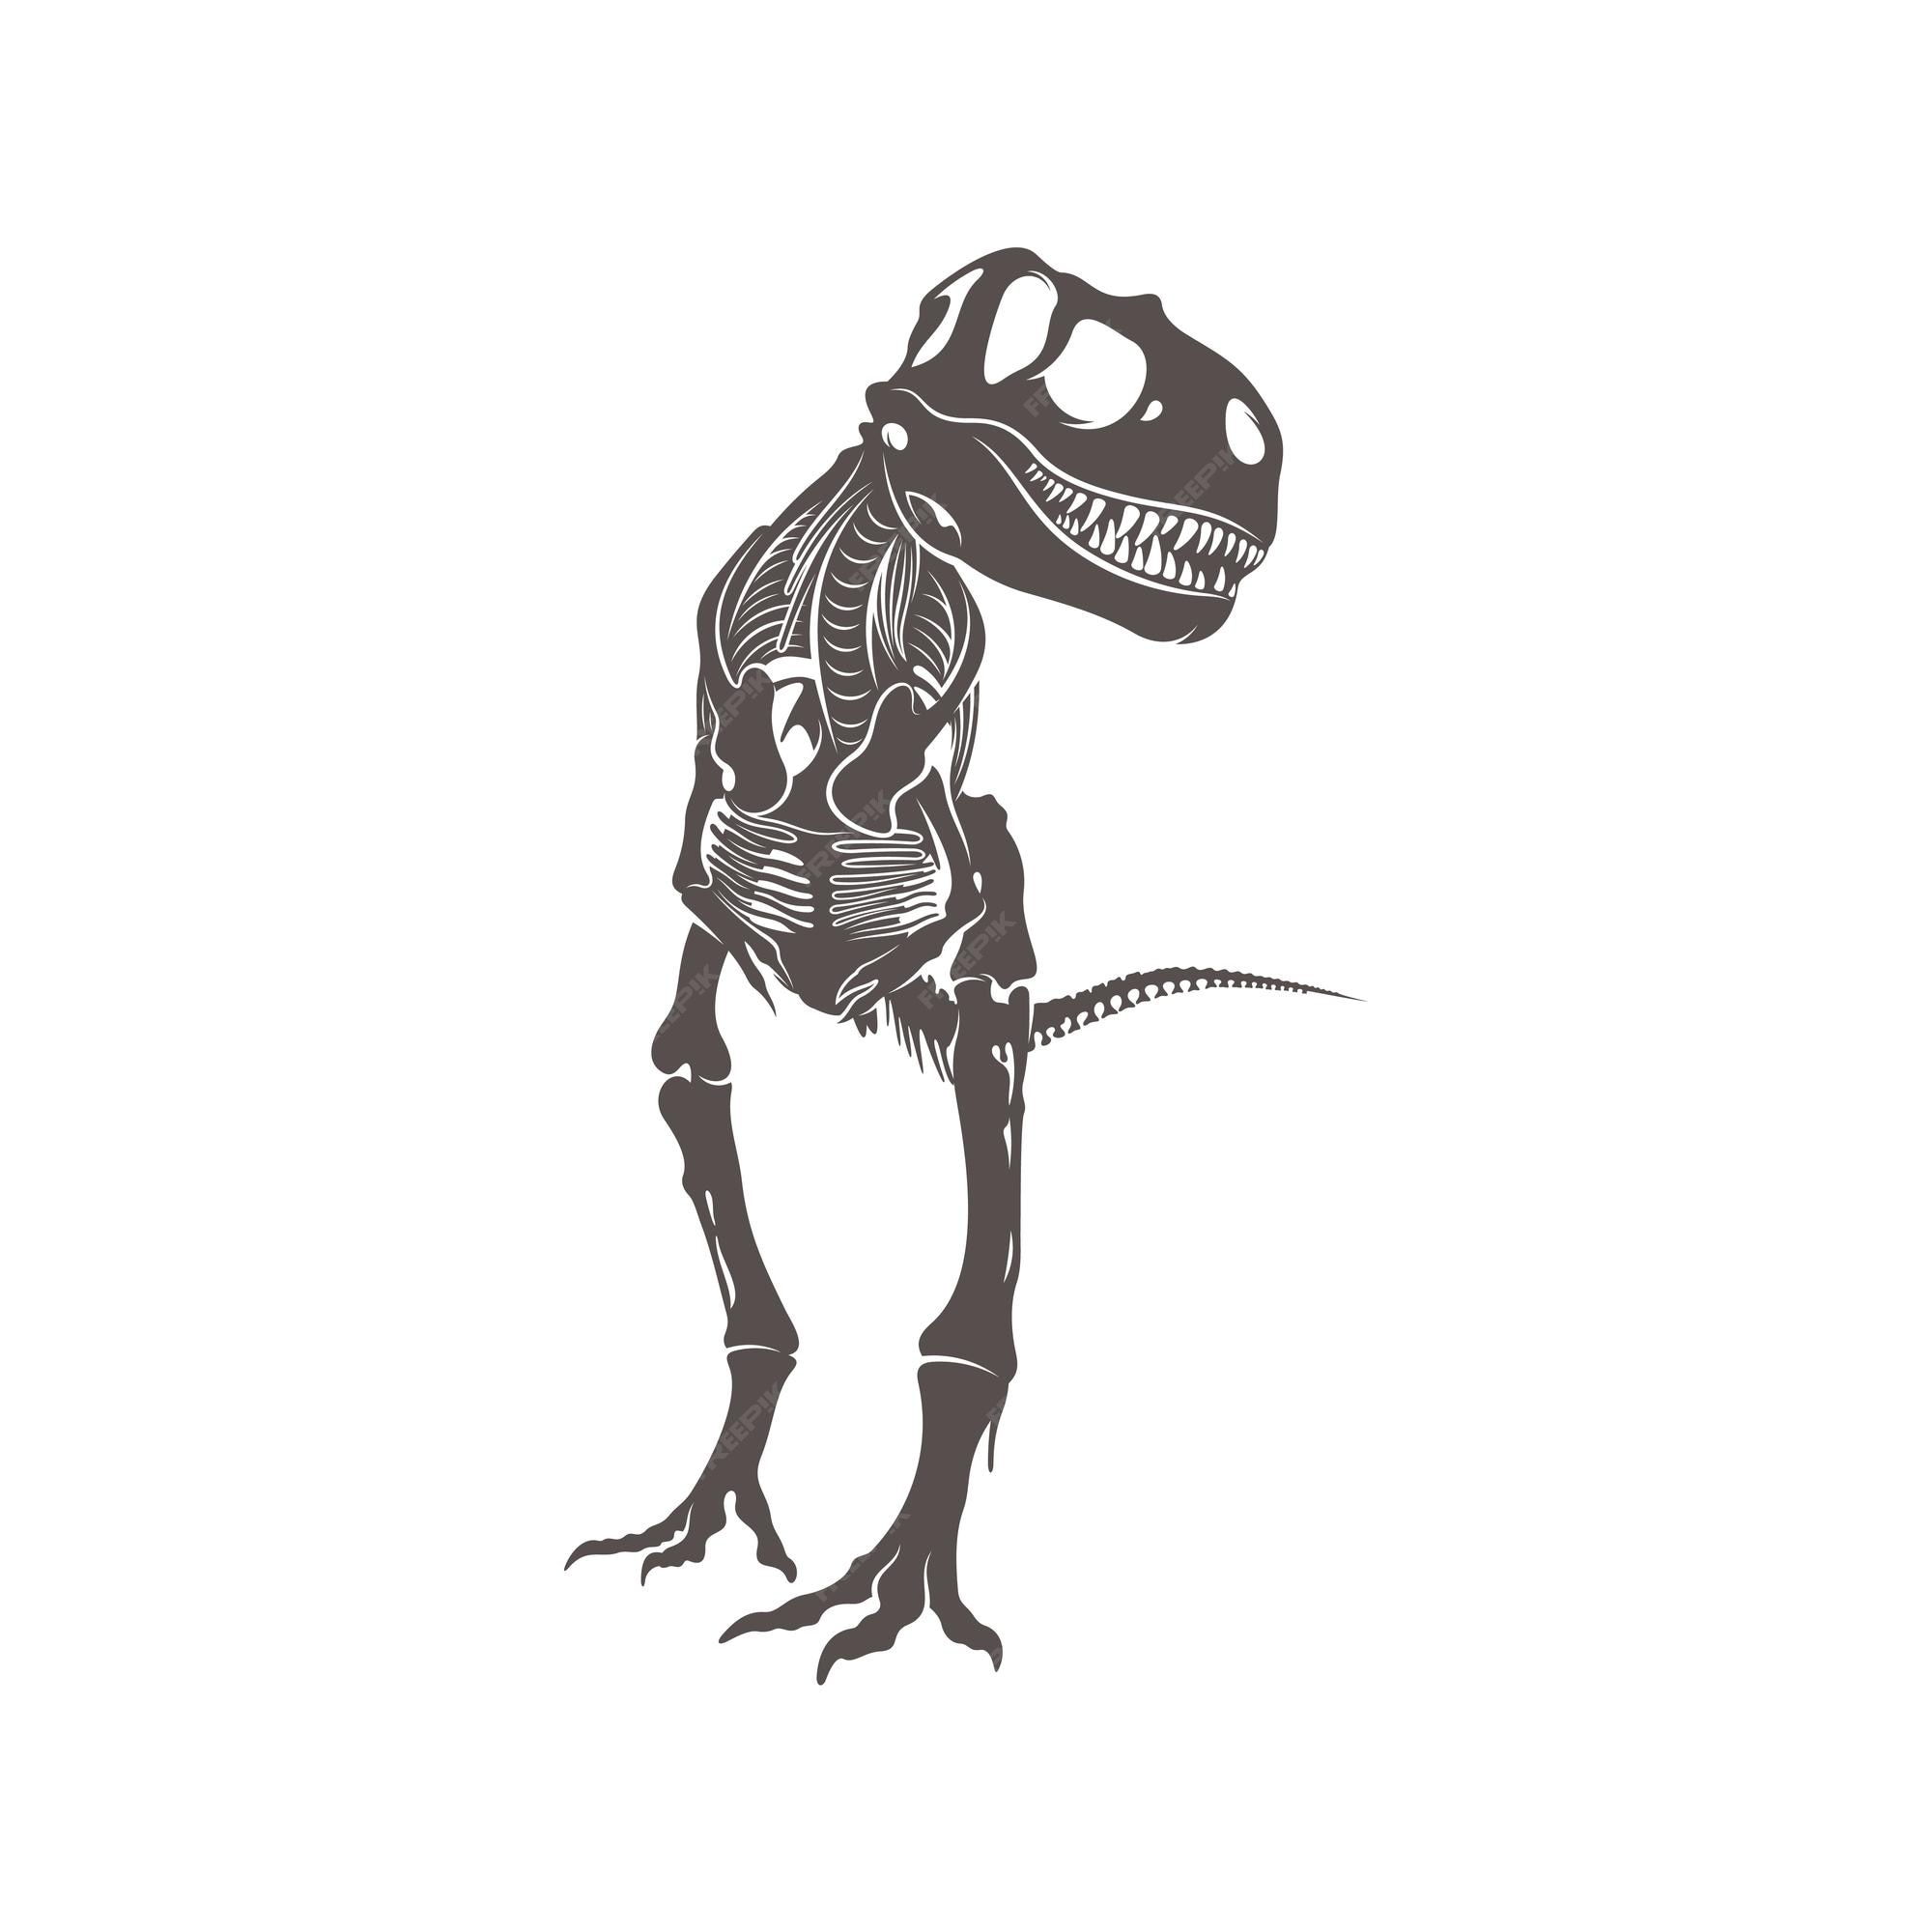 T rex esqueleto de dinossauro silhueta espacial negativa ilustração  vetor(es) de stock de ©jkazanceva 299125308